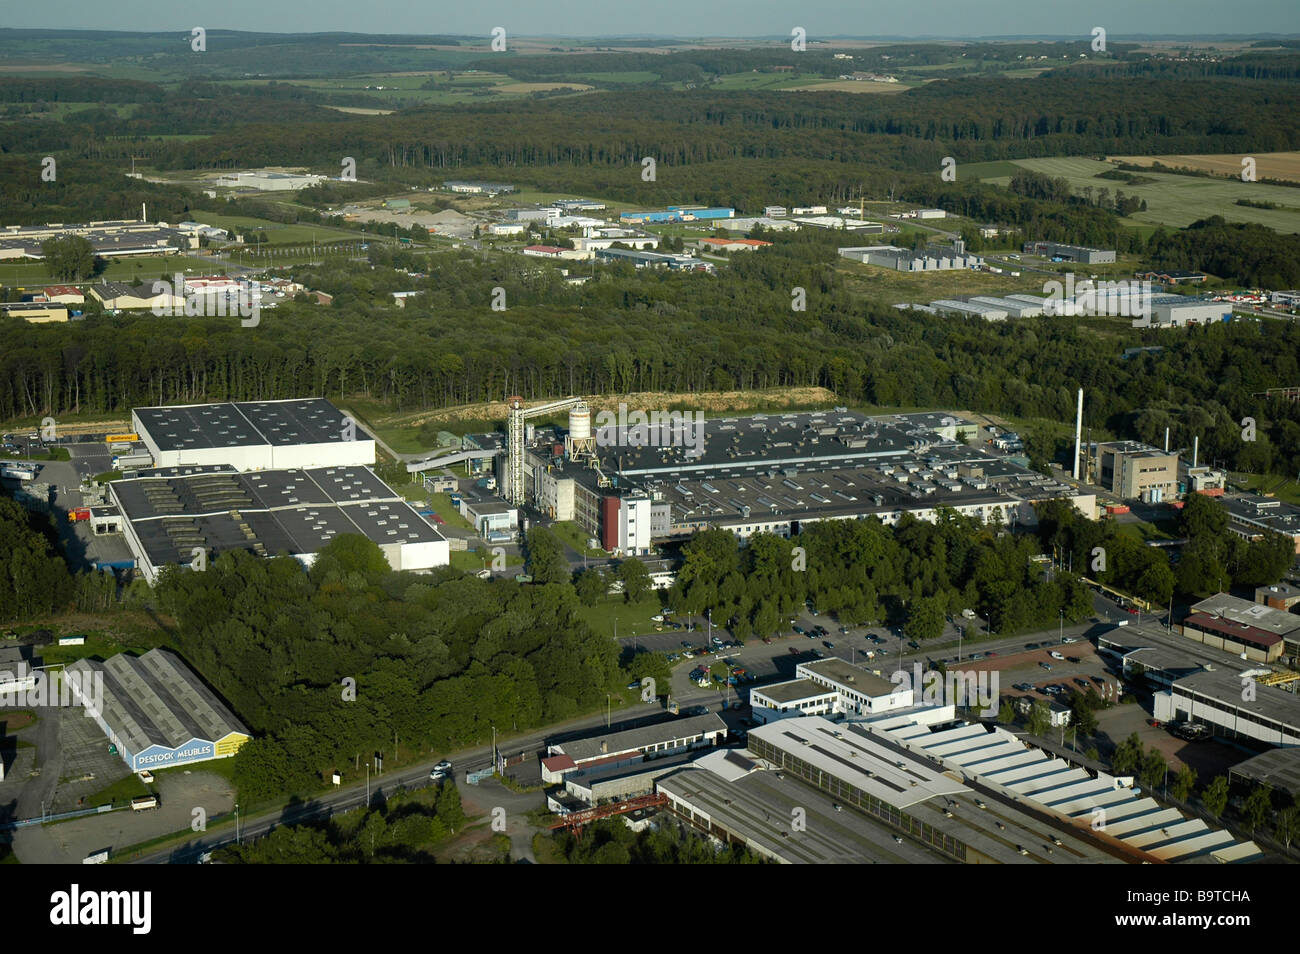 Luftaufnahme von dem französischen Continental-Reifen-Werk in Sarreguemines - Frankreich Stockfoto